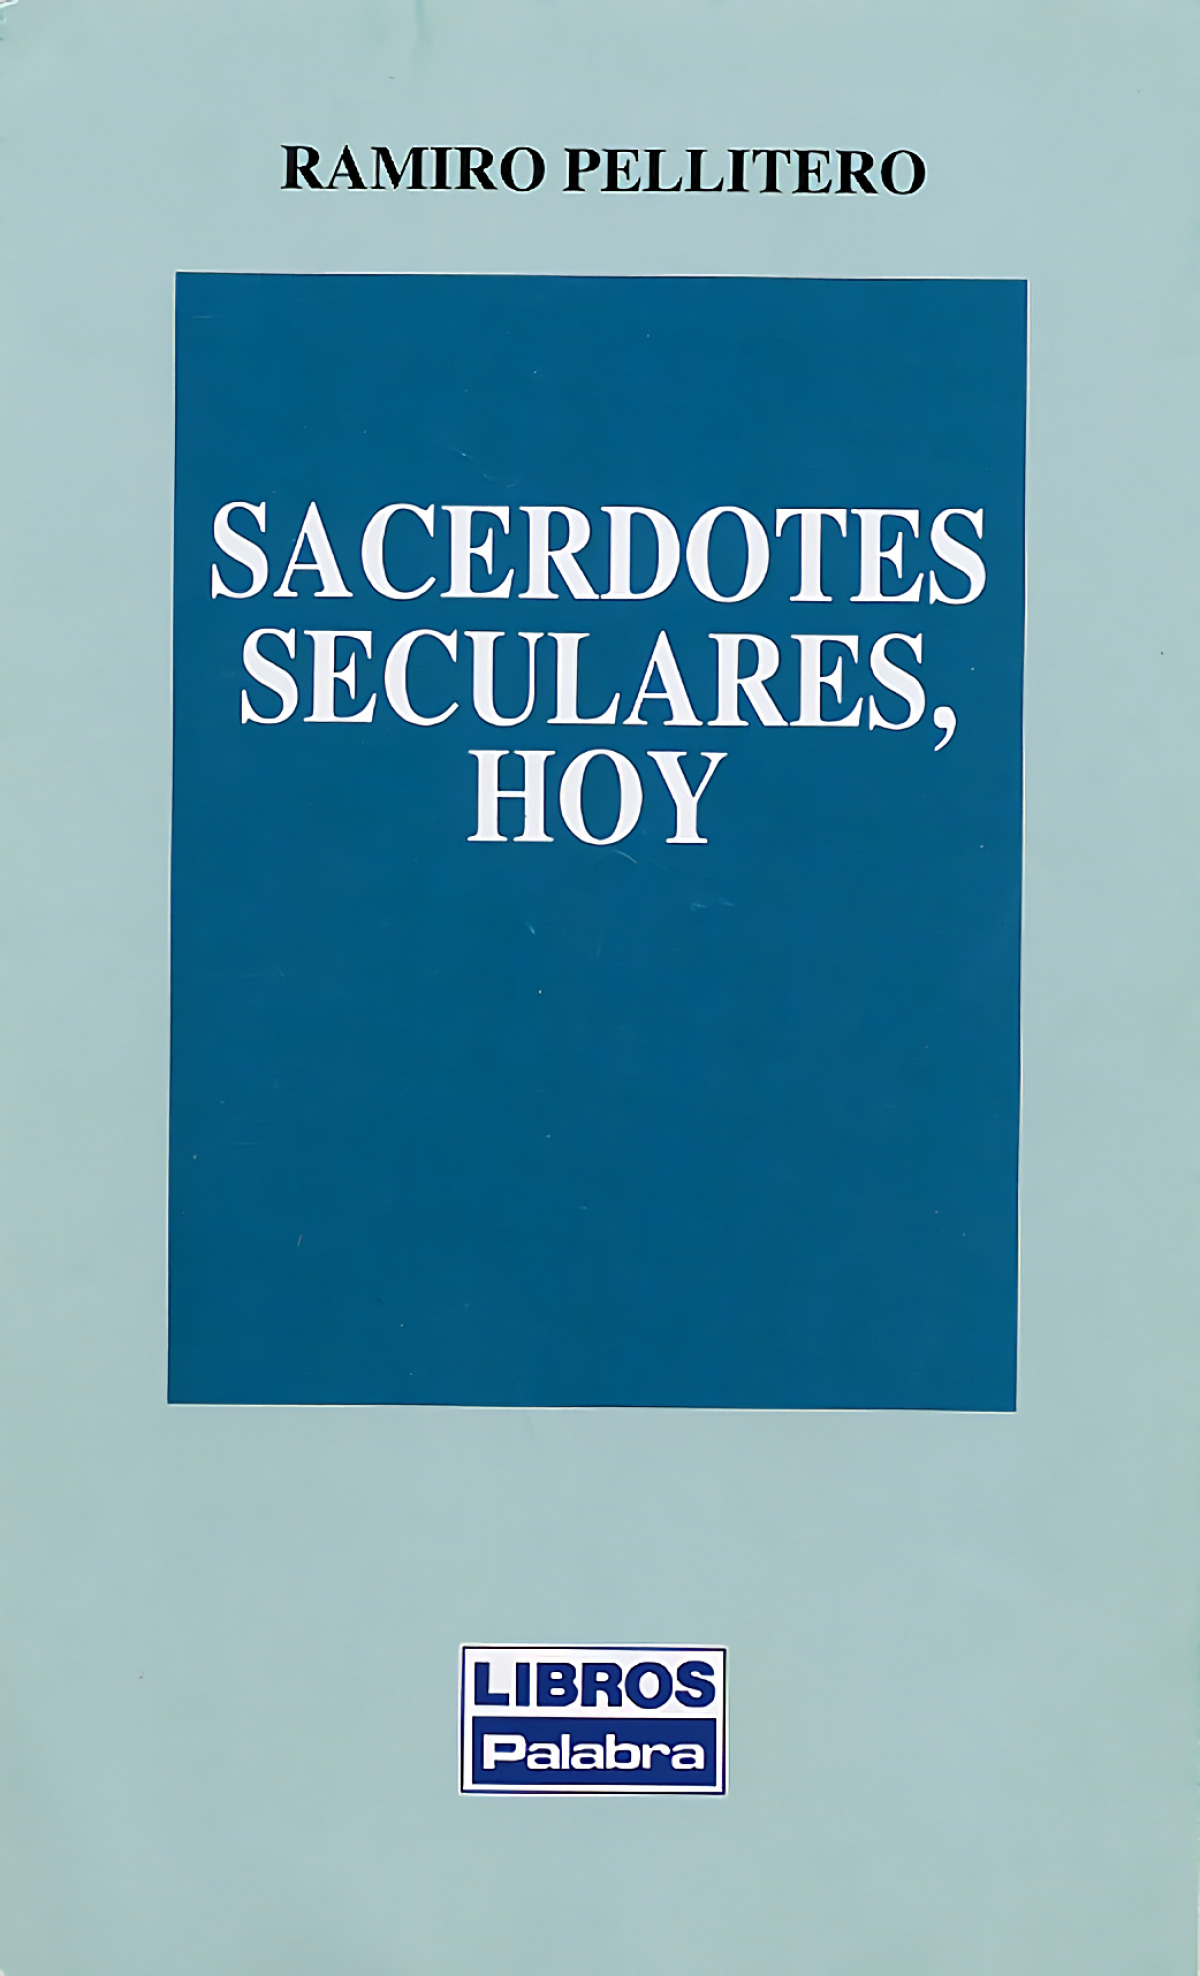 Sacerdotes seculares, hoy - Pellitero, Ramiro